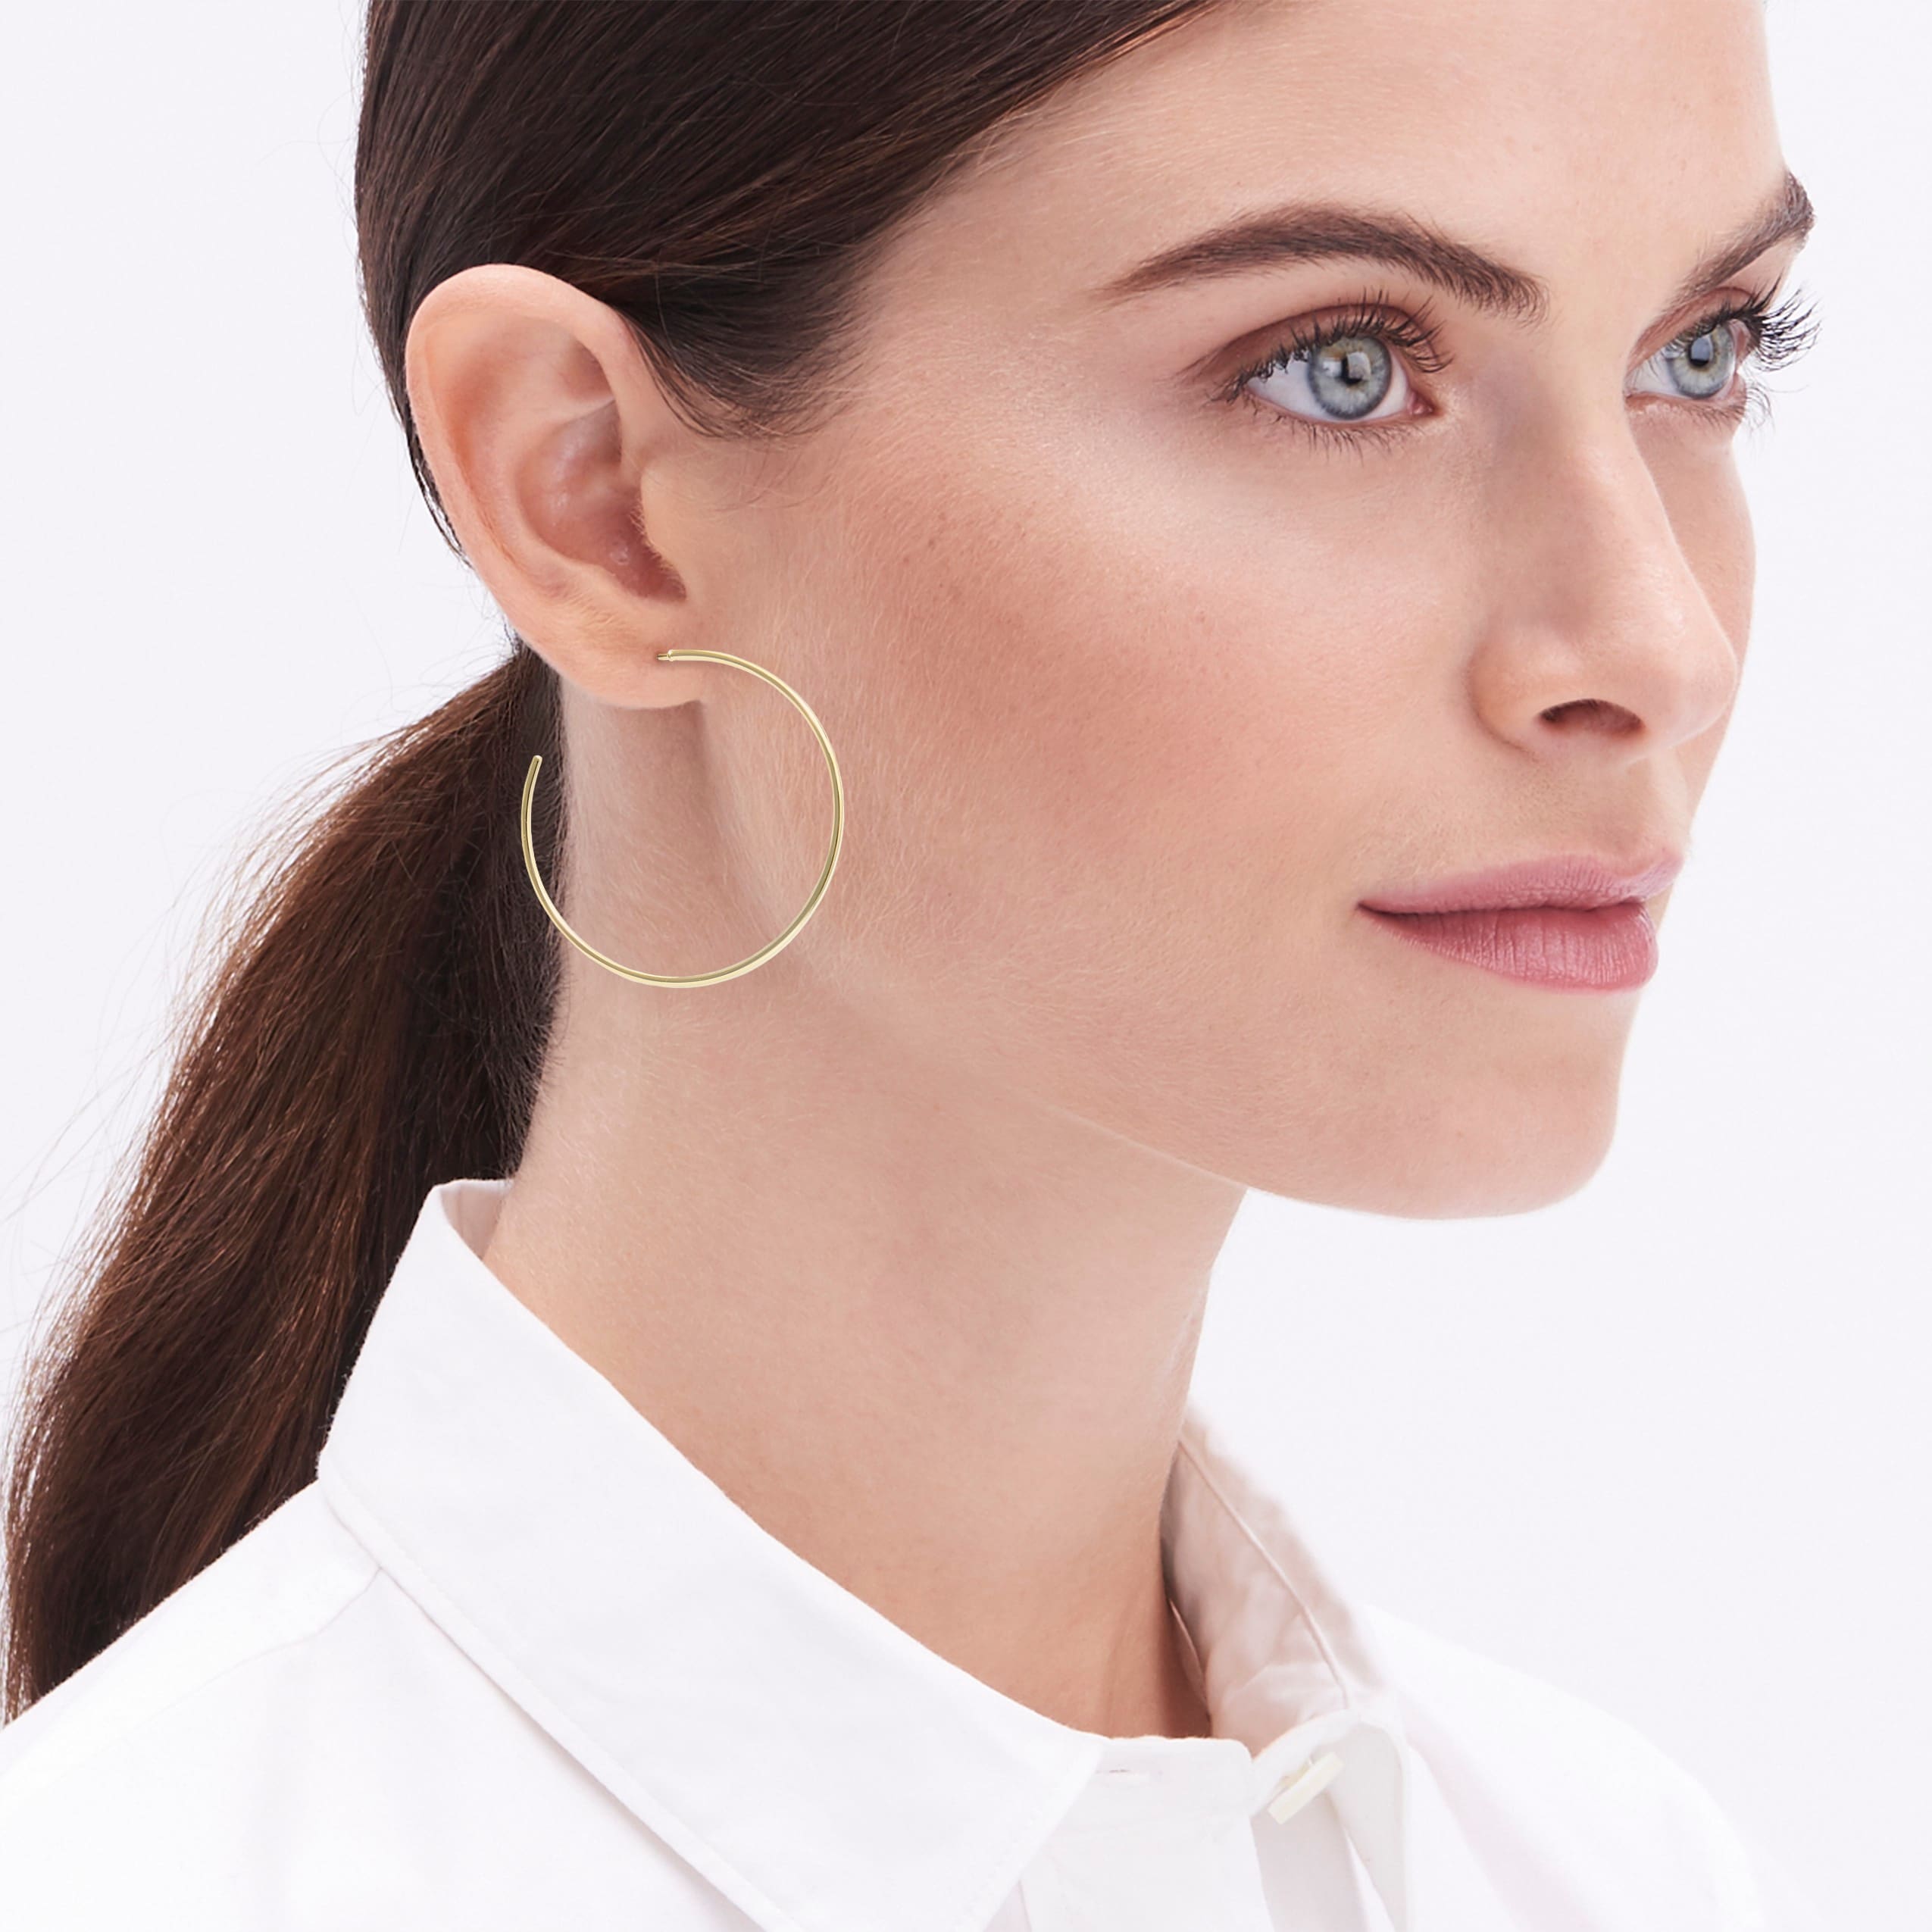 Simple hoop earrings